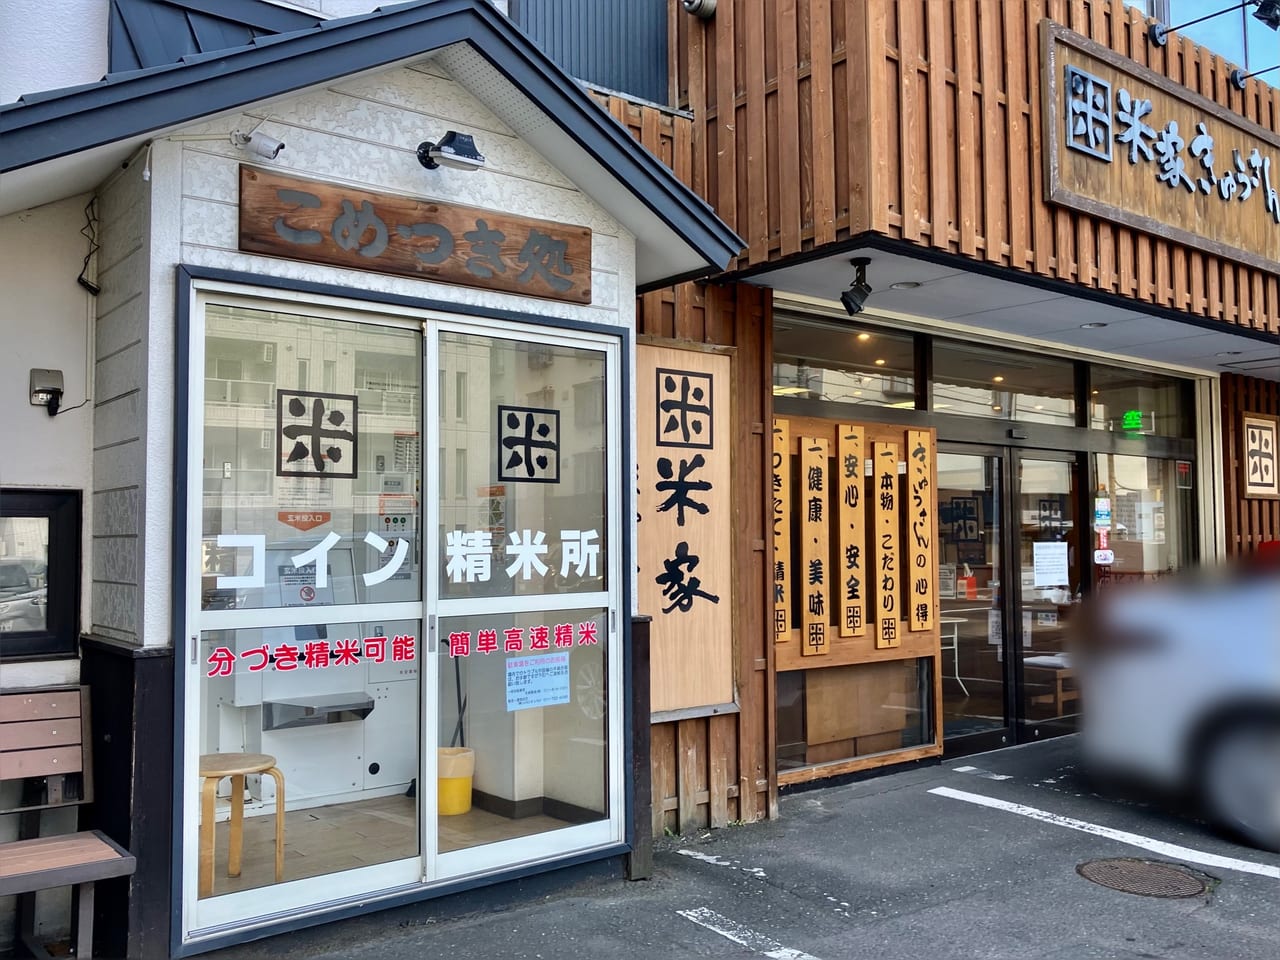 札幌駅からも徒歩圏内、お米屋さんの本格おむすびが食べられるお店「おむすびきゅうさん」に行ってみた。